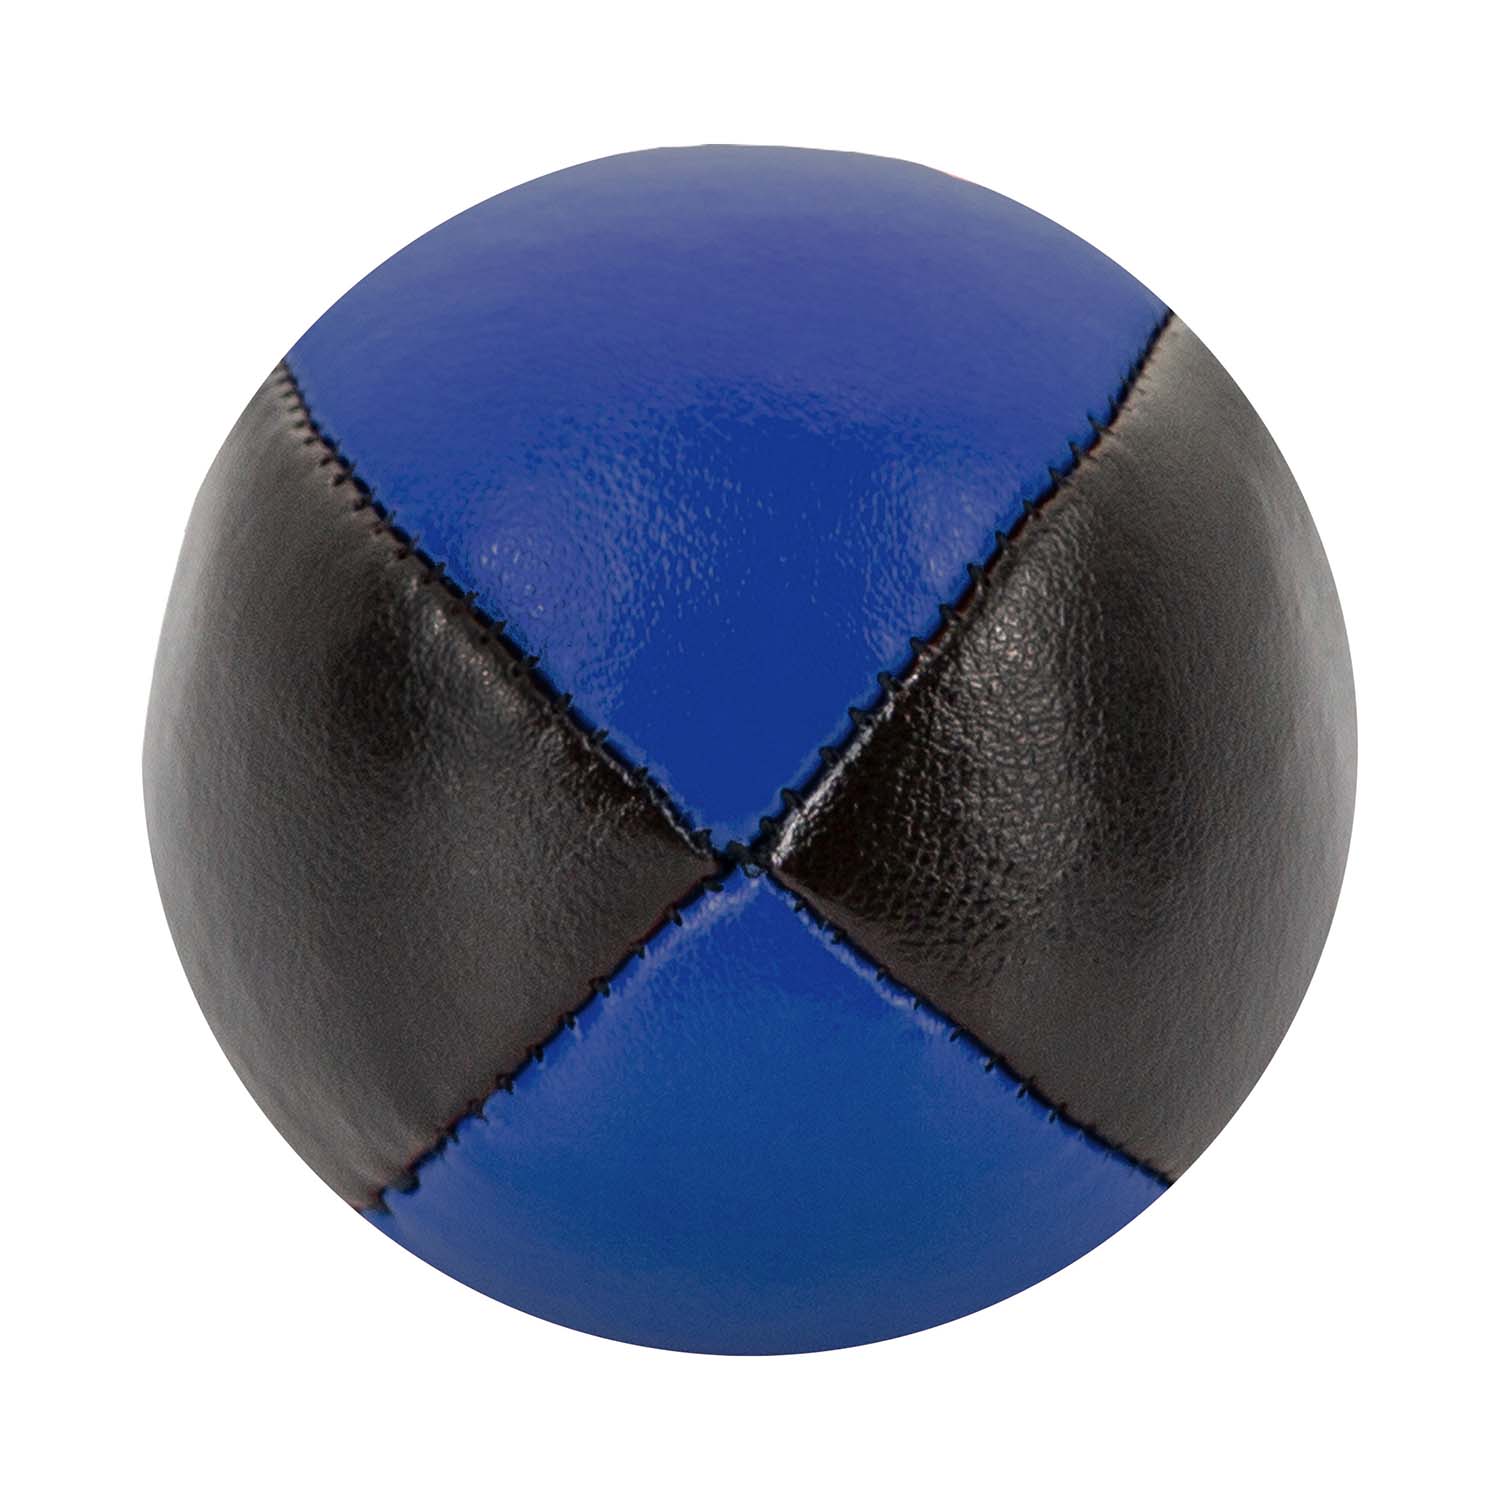 Premium Jonglageball mit 62mm und 100g in schwarz-blau kaufen!